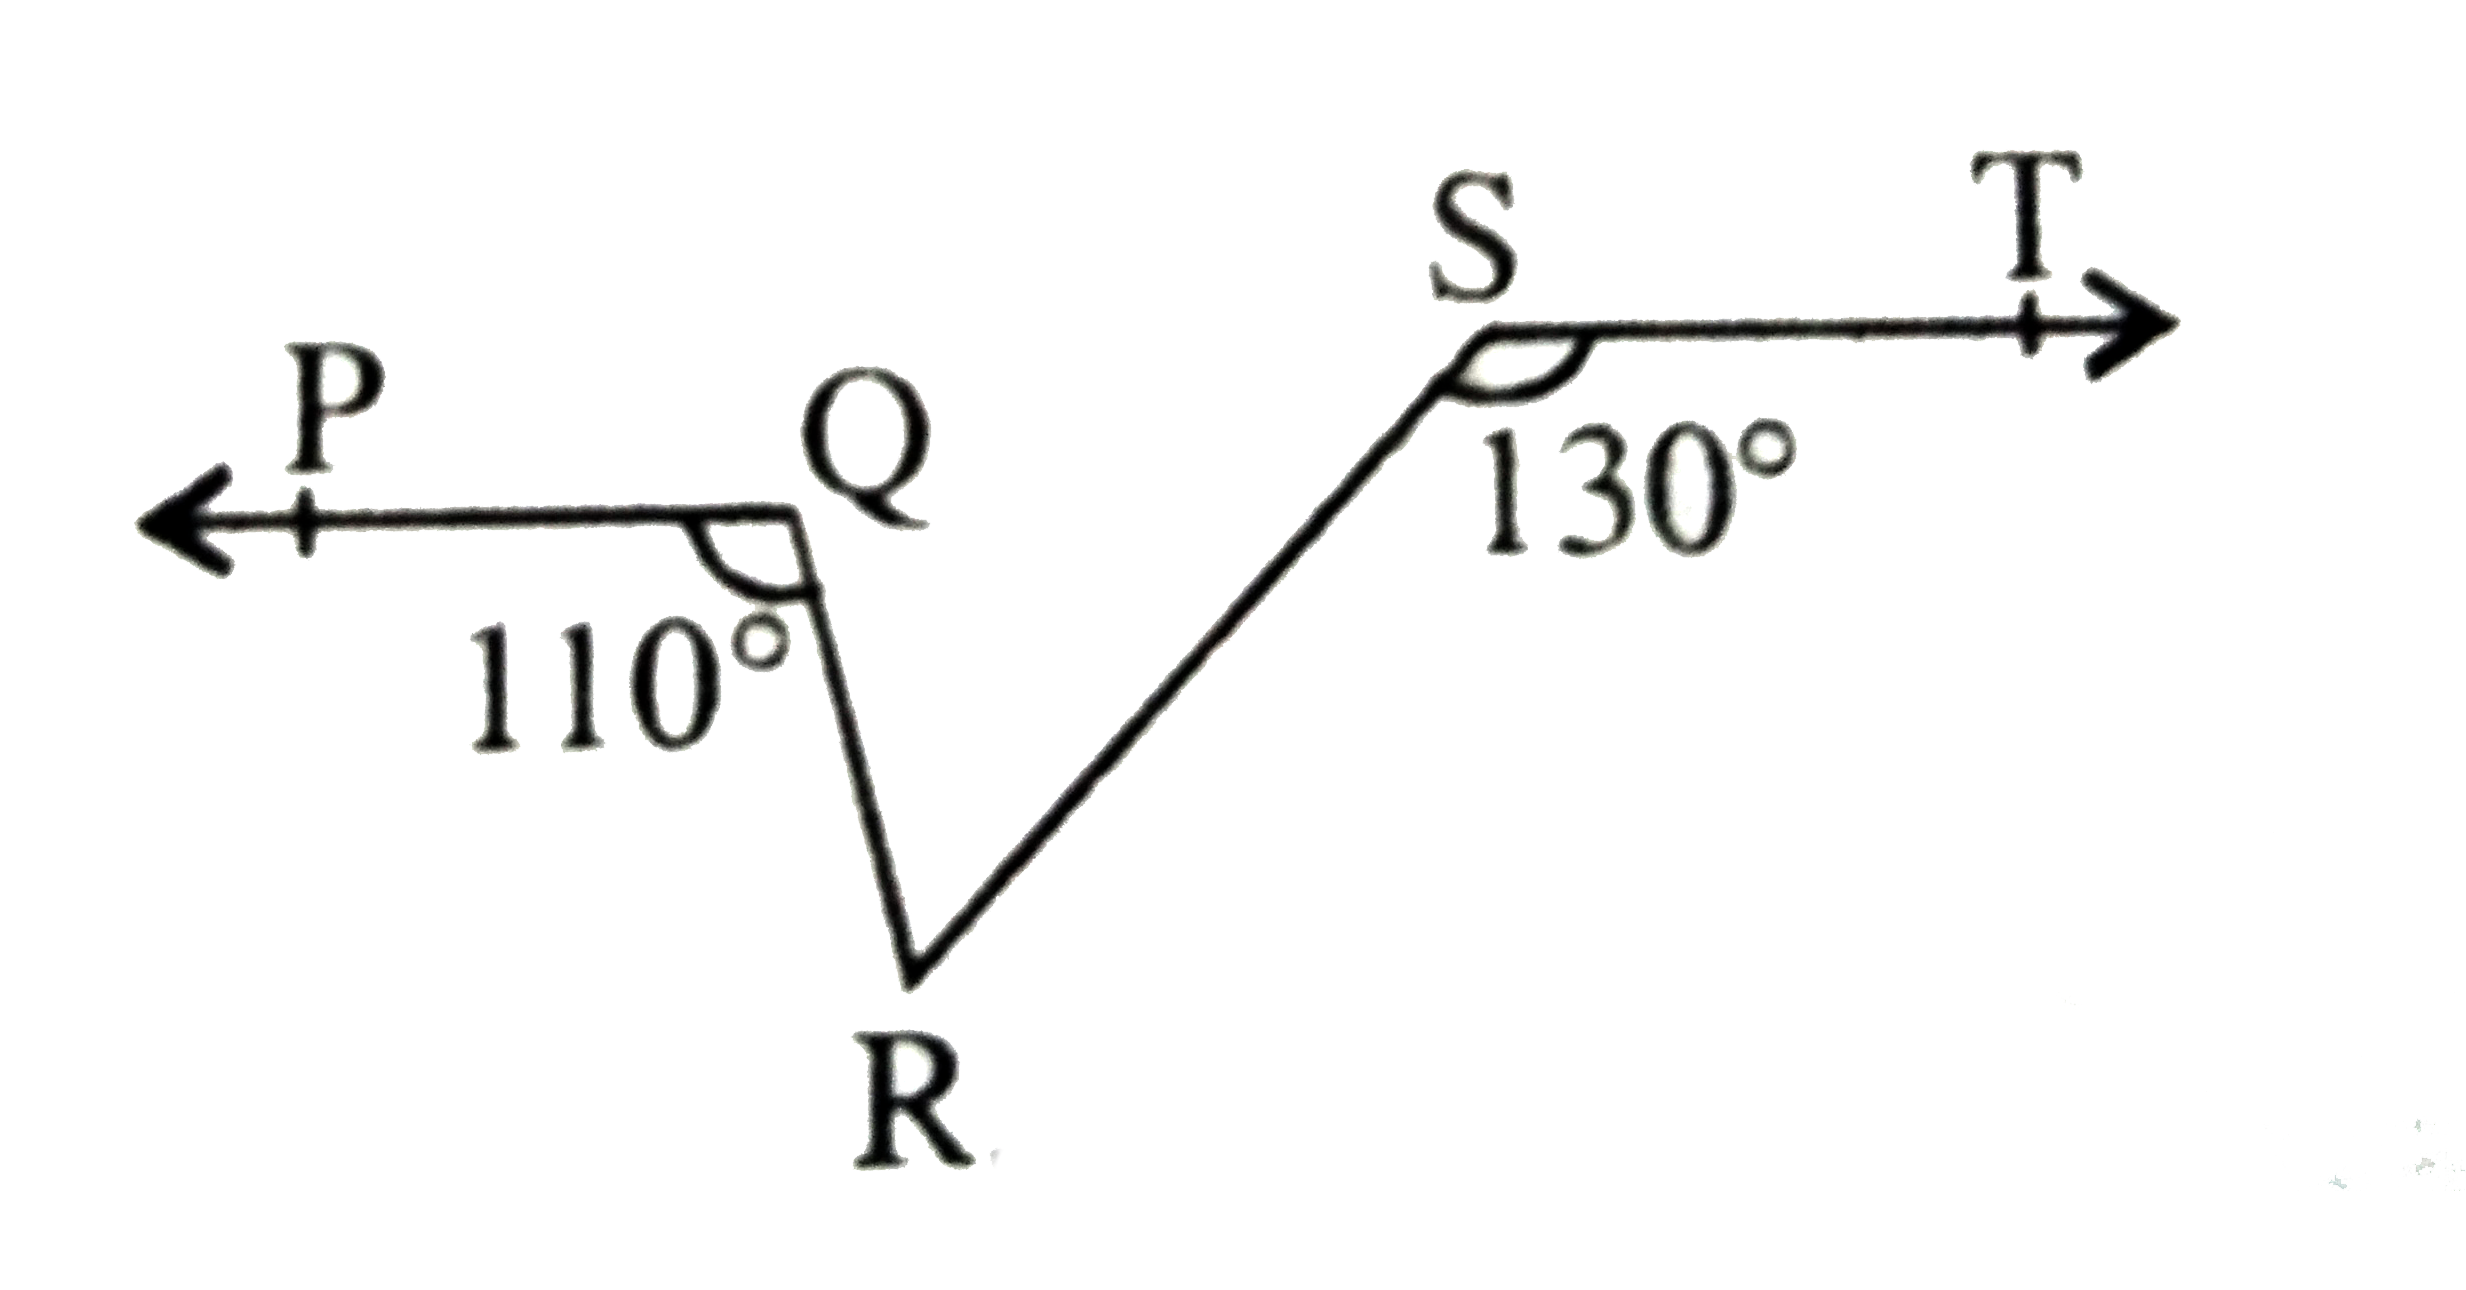 नीचे की आकृति में यदि PQ||ST,/PQR=110^(@) और /RST=130^(@) है तो /QRS ज्ञात कीजिए ।